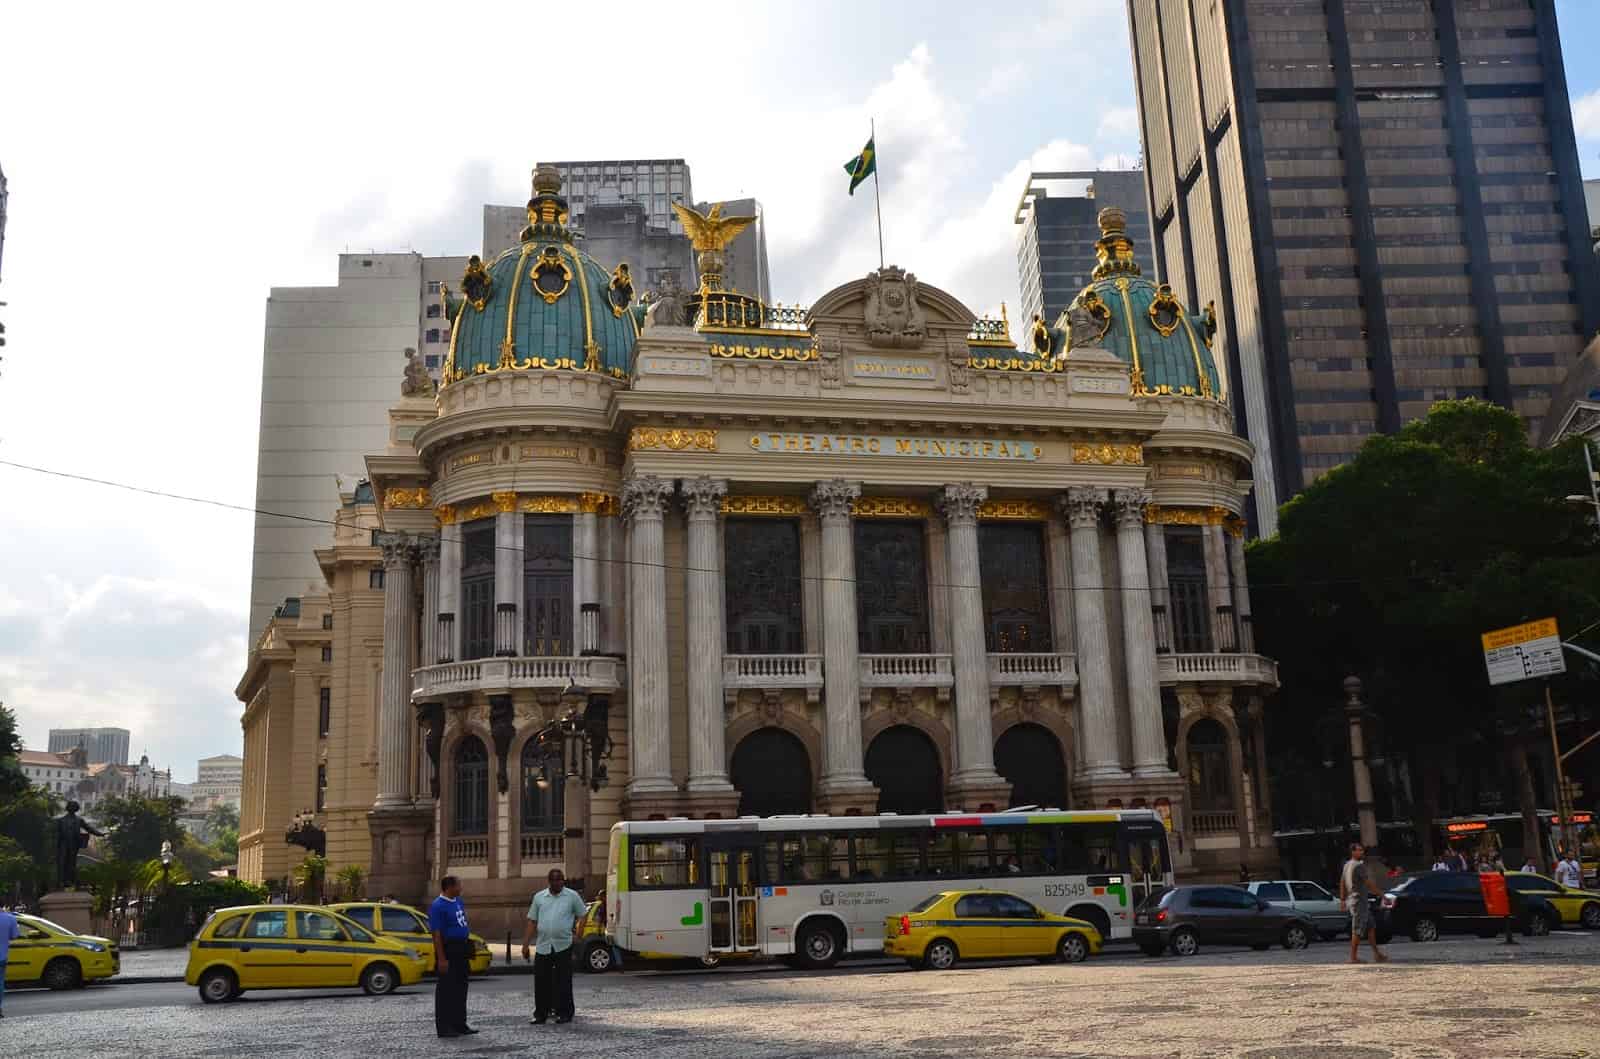 Theatro Municipal in Rio de Janeiro, Brazil